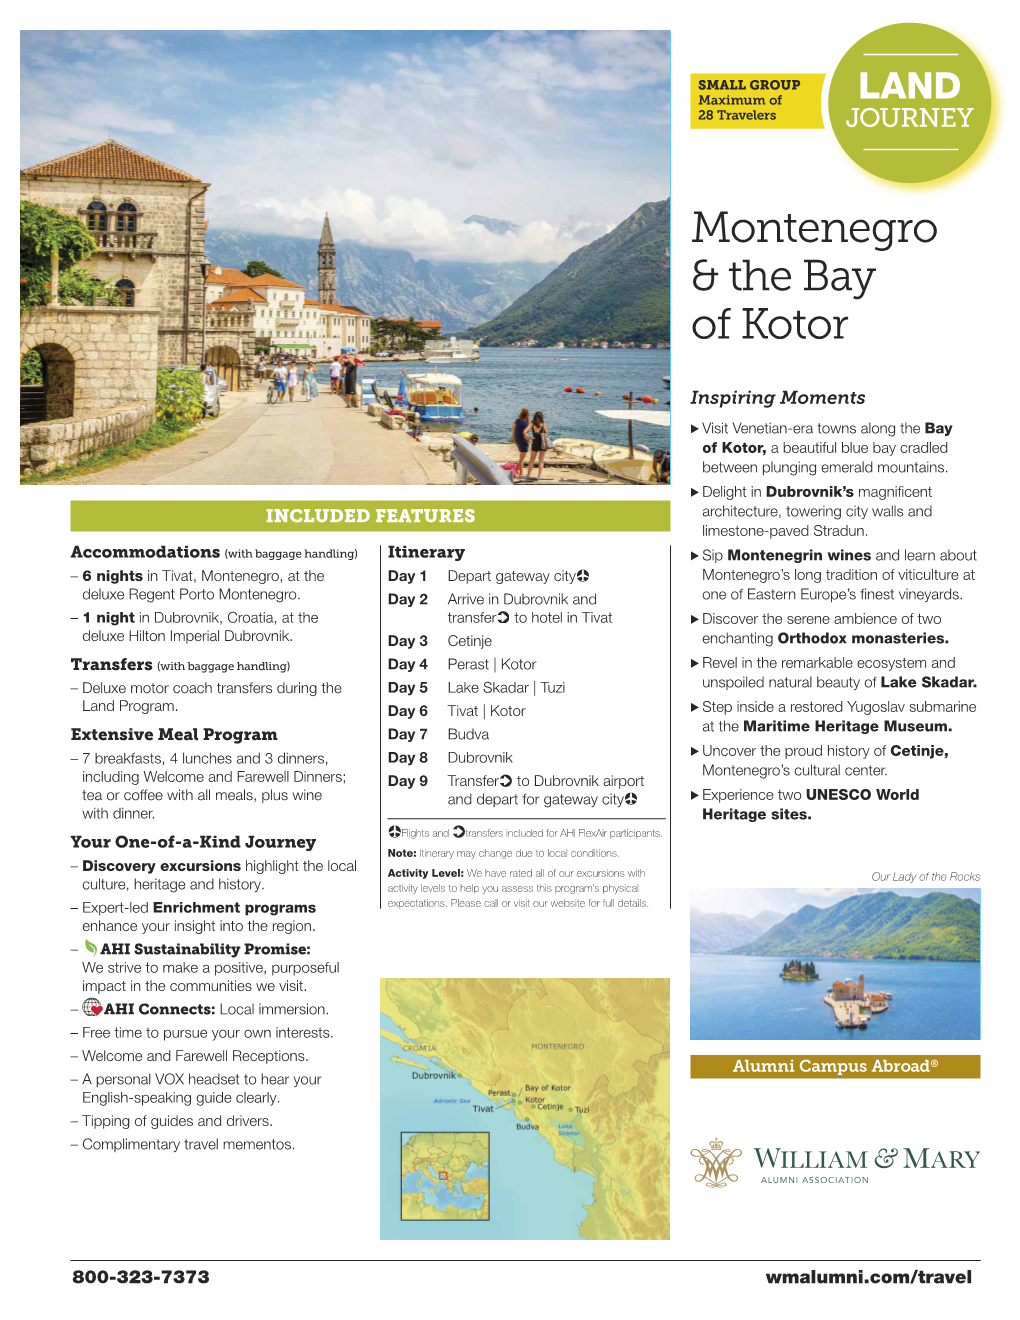 Montenegro & the Bay of Kotor